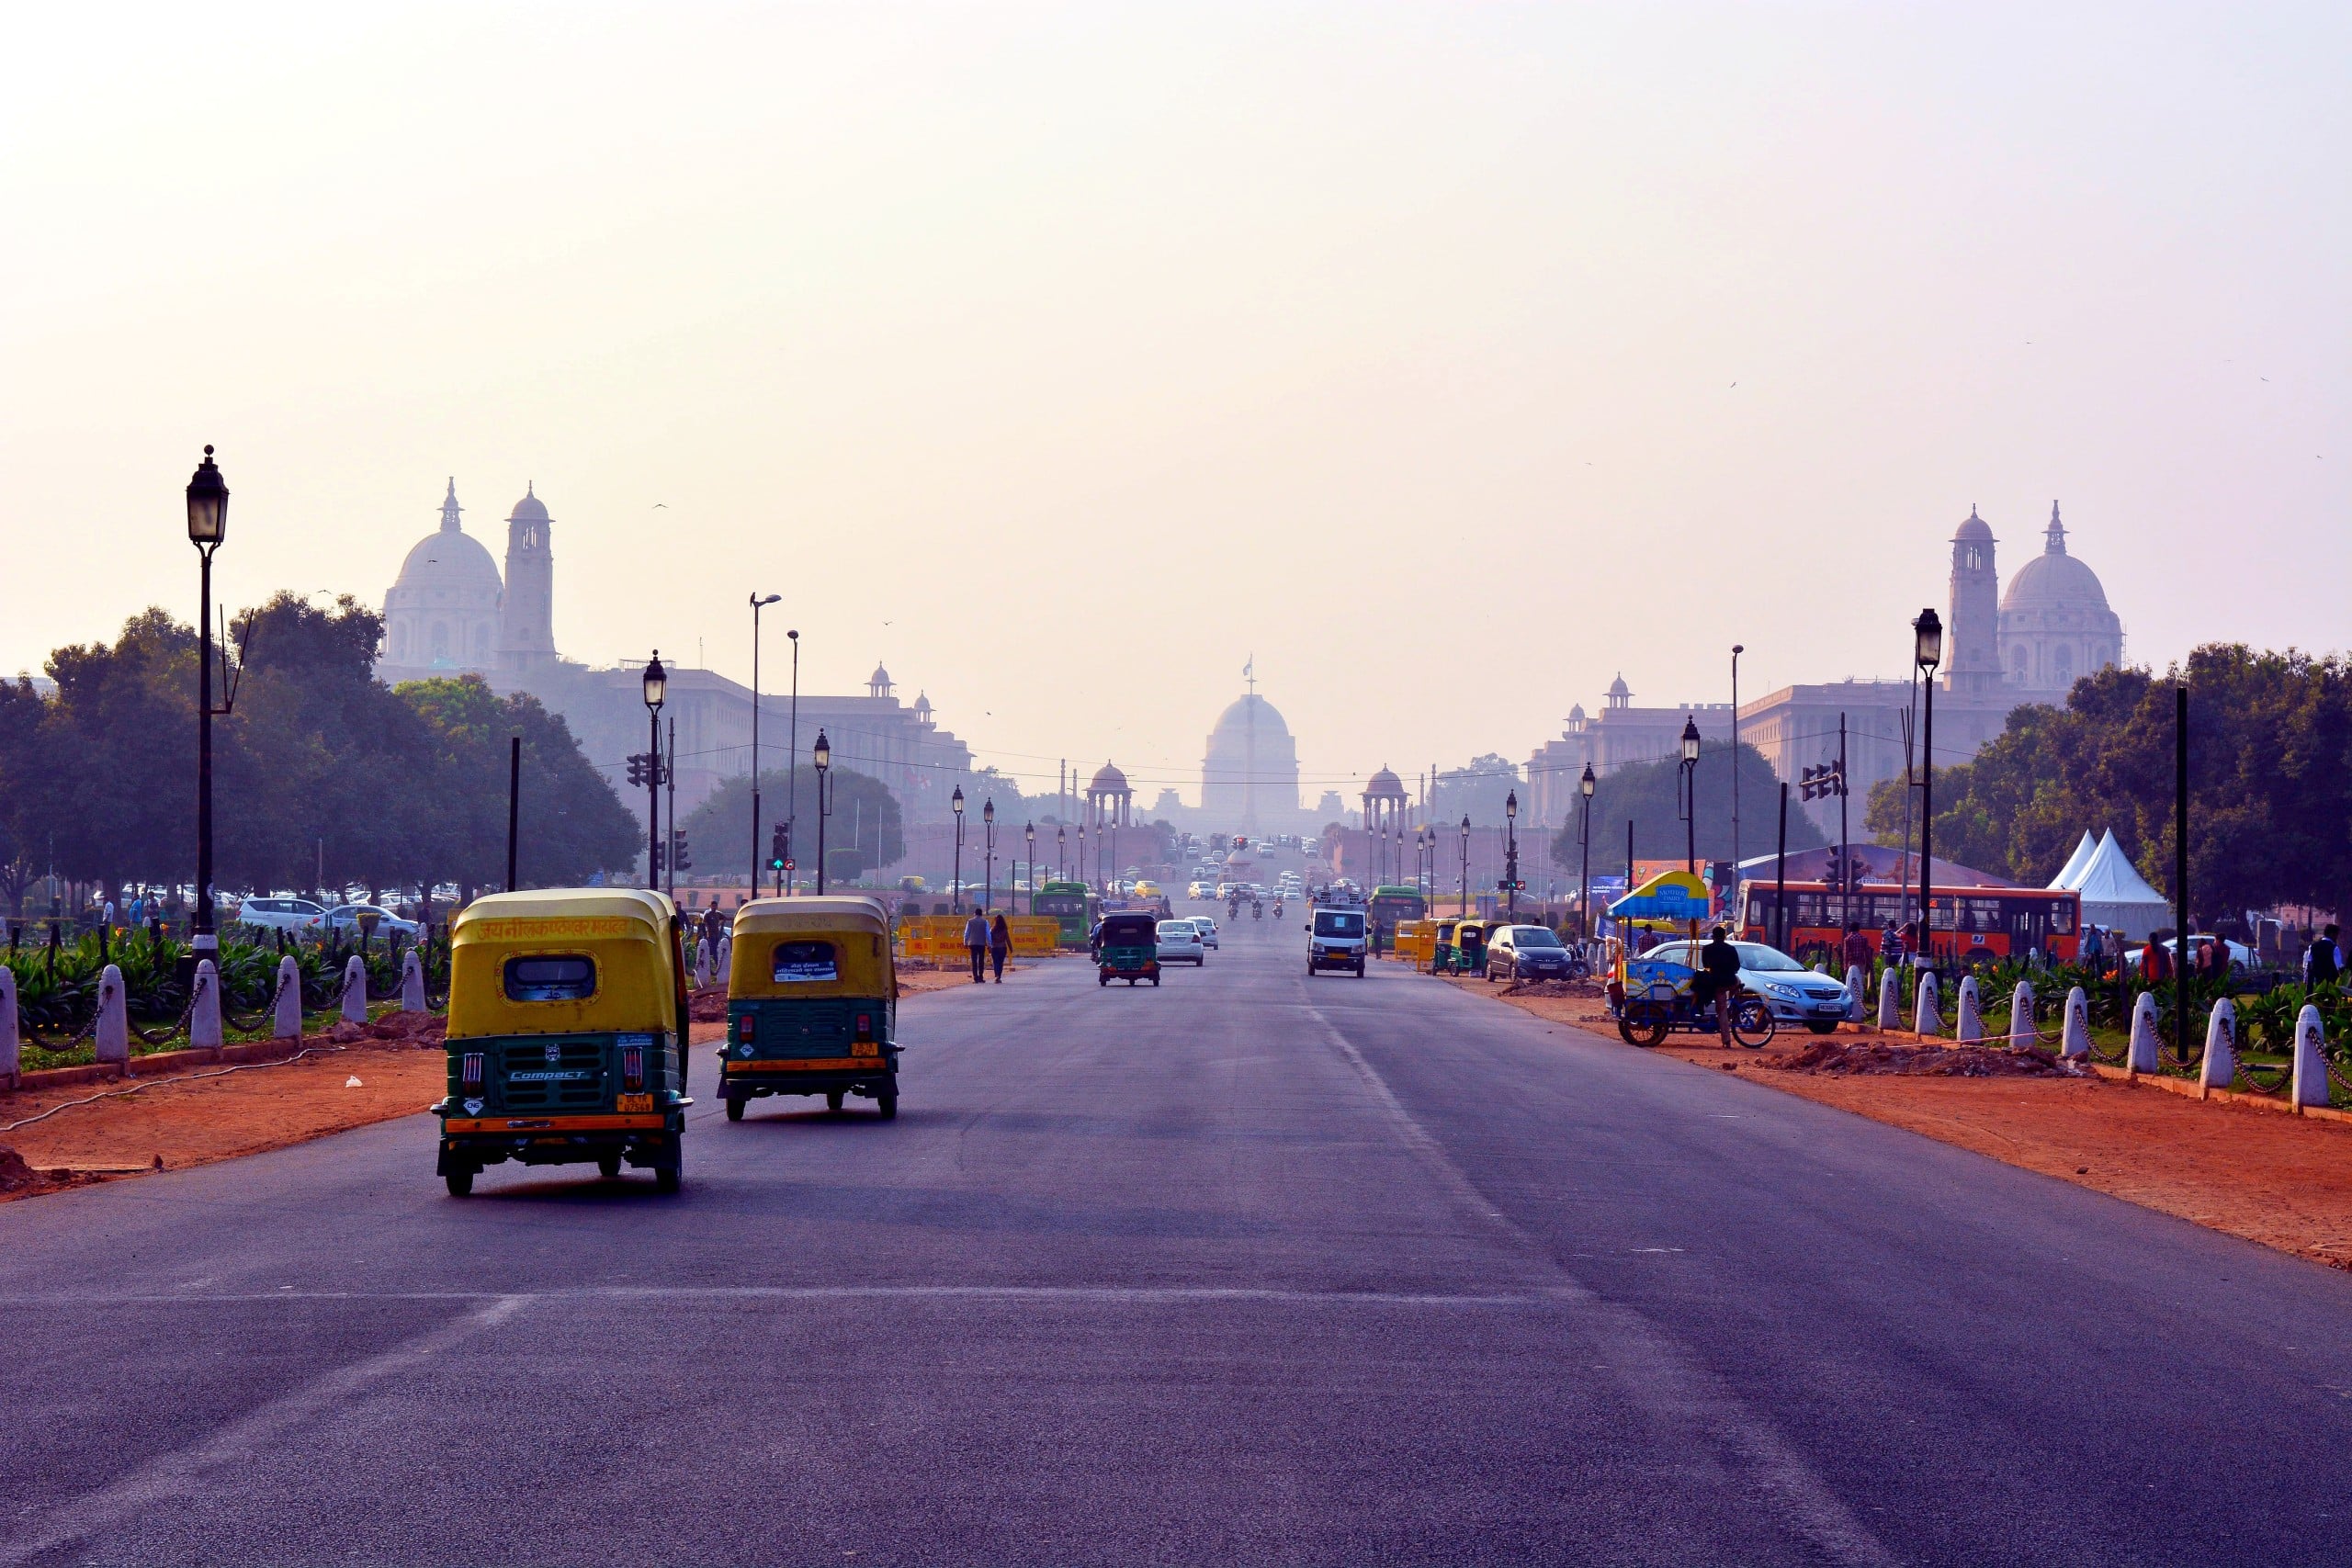 Delhi wird im Jahr 2030 mit fast 39 Millionen Menschen die größte Stadt der Welt darstellen. Bildquelle: Unsplash